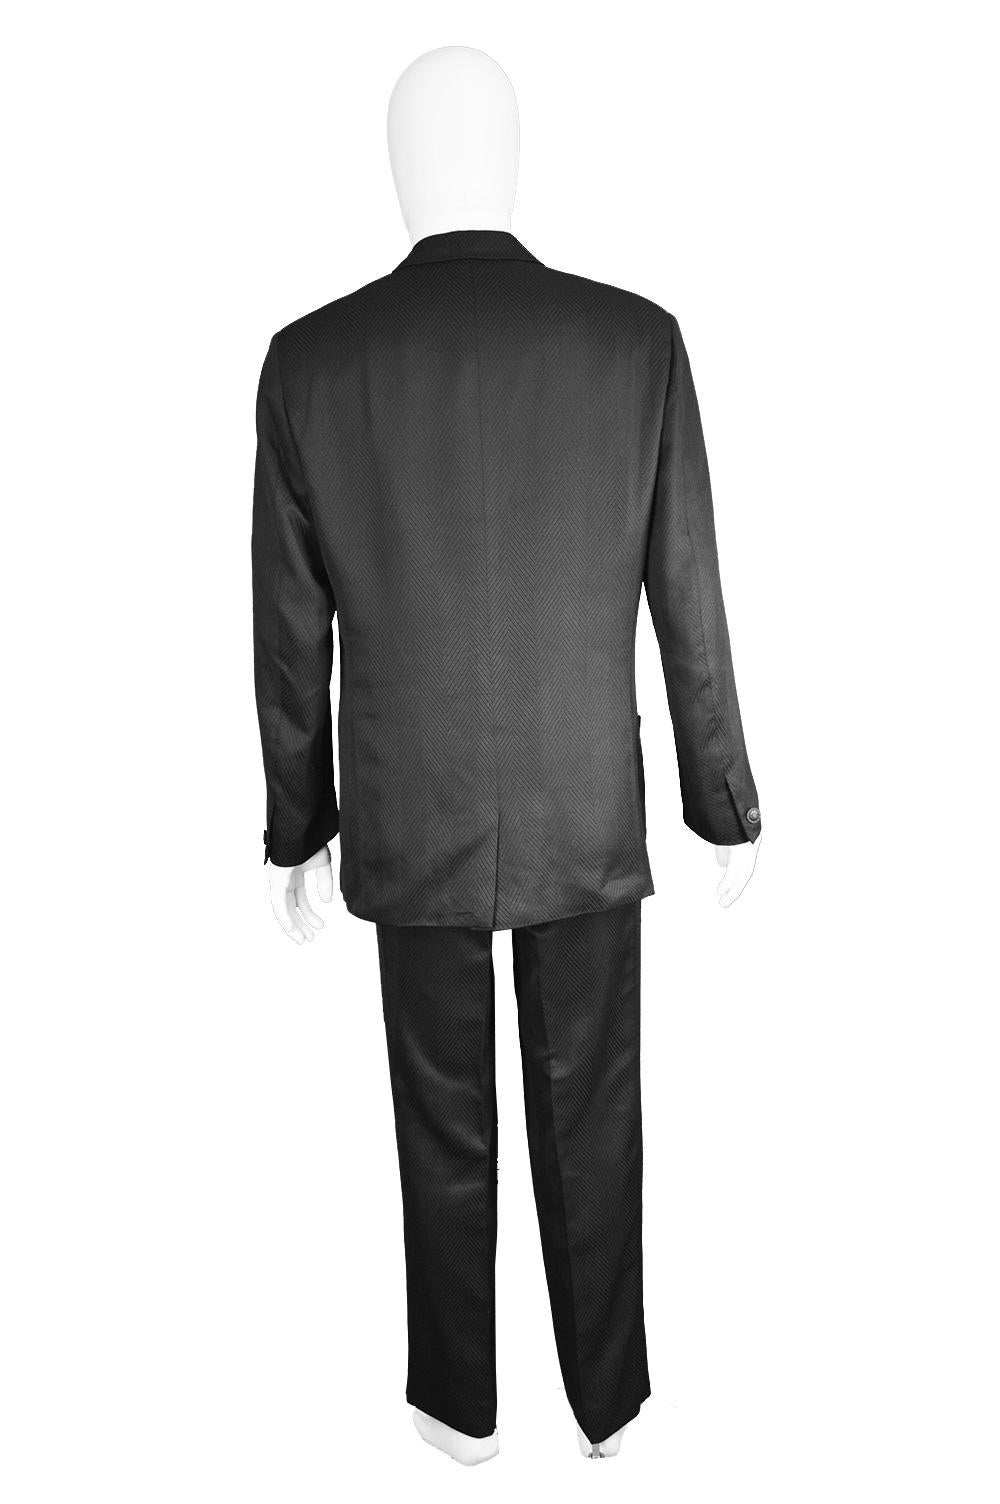 Gianni Versace Men's Black 100% Silk Jacquard 2 Piece Vintage Suit, 1990s For Sale 3